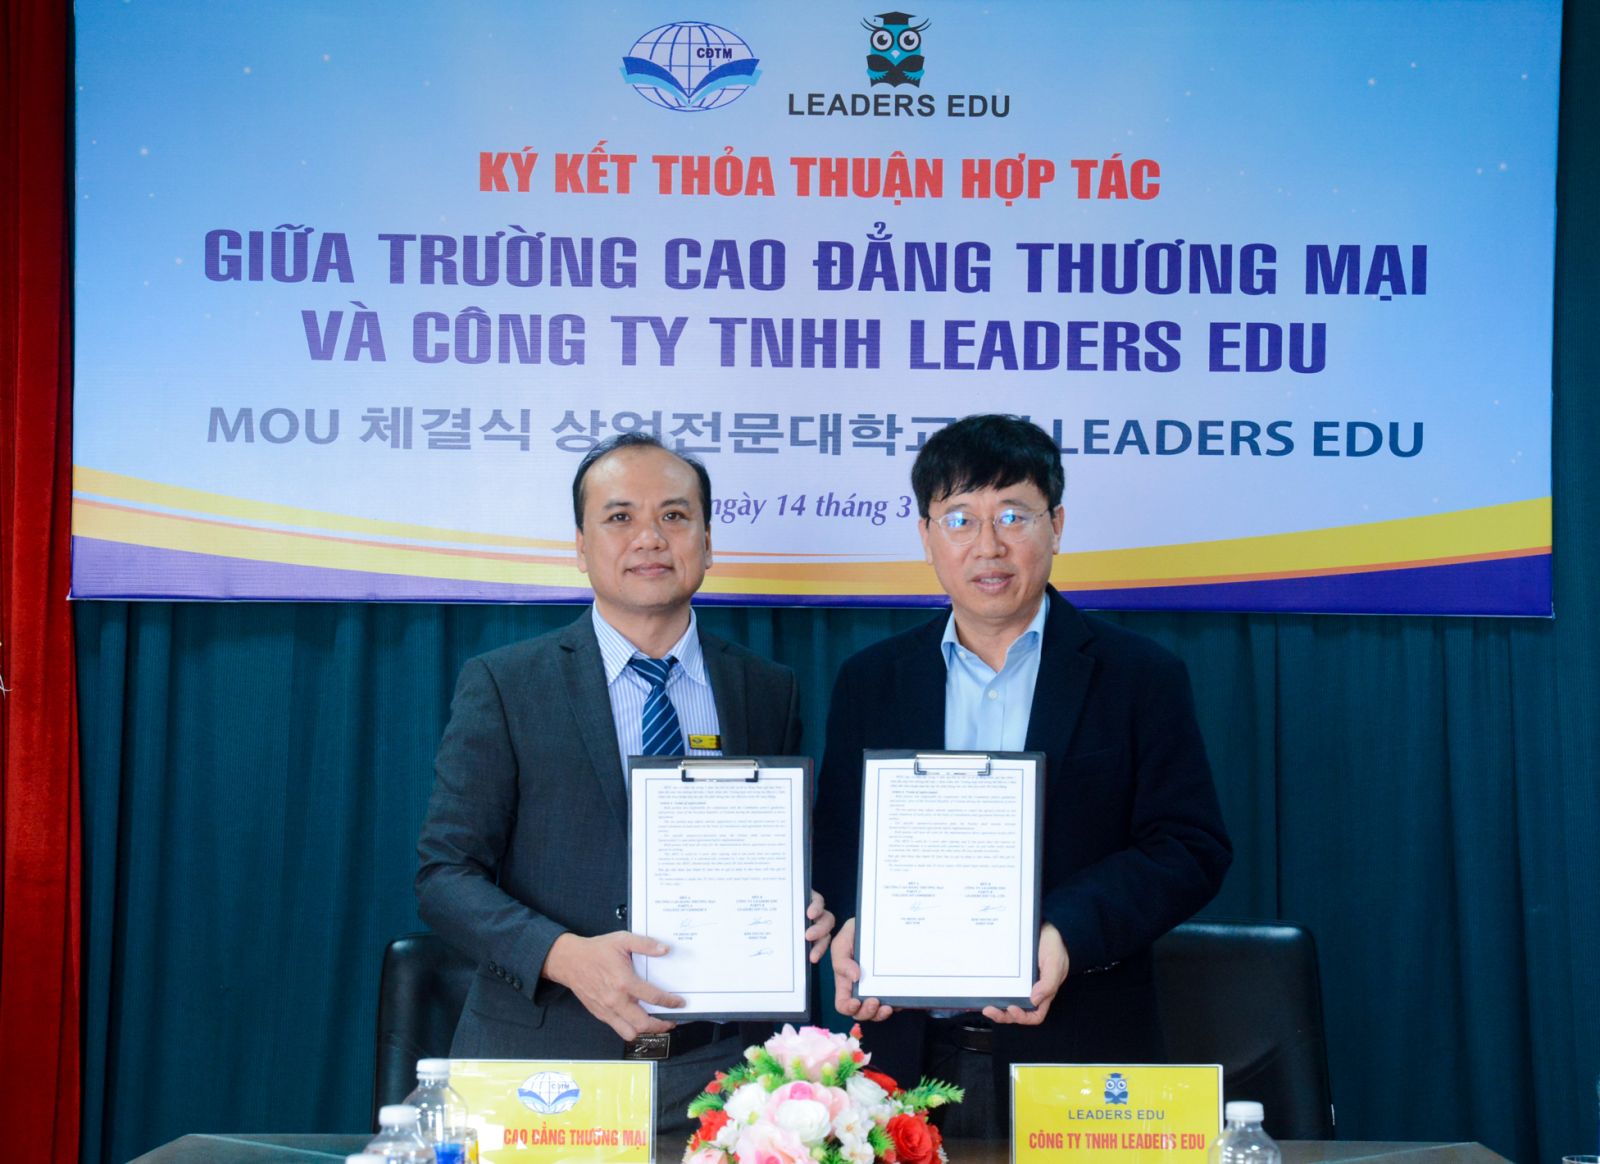 Trường Cao đẳng Thương mại ký hợp tác với Công ty TNHH Leaders Edu